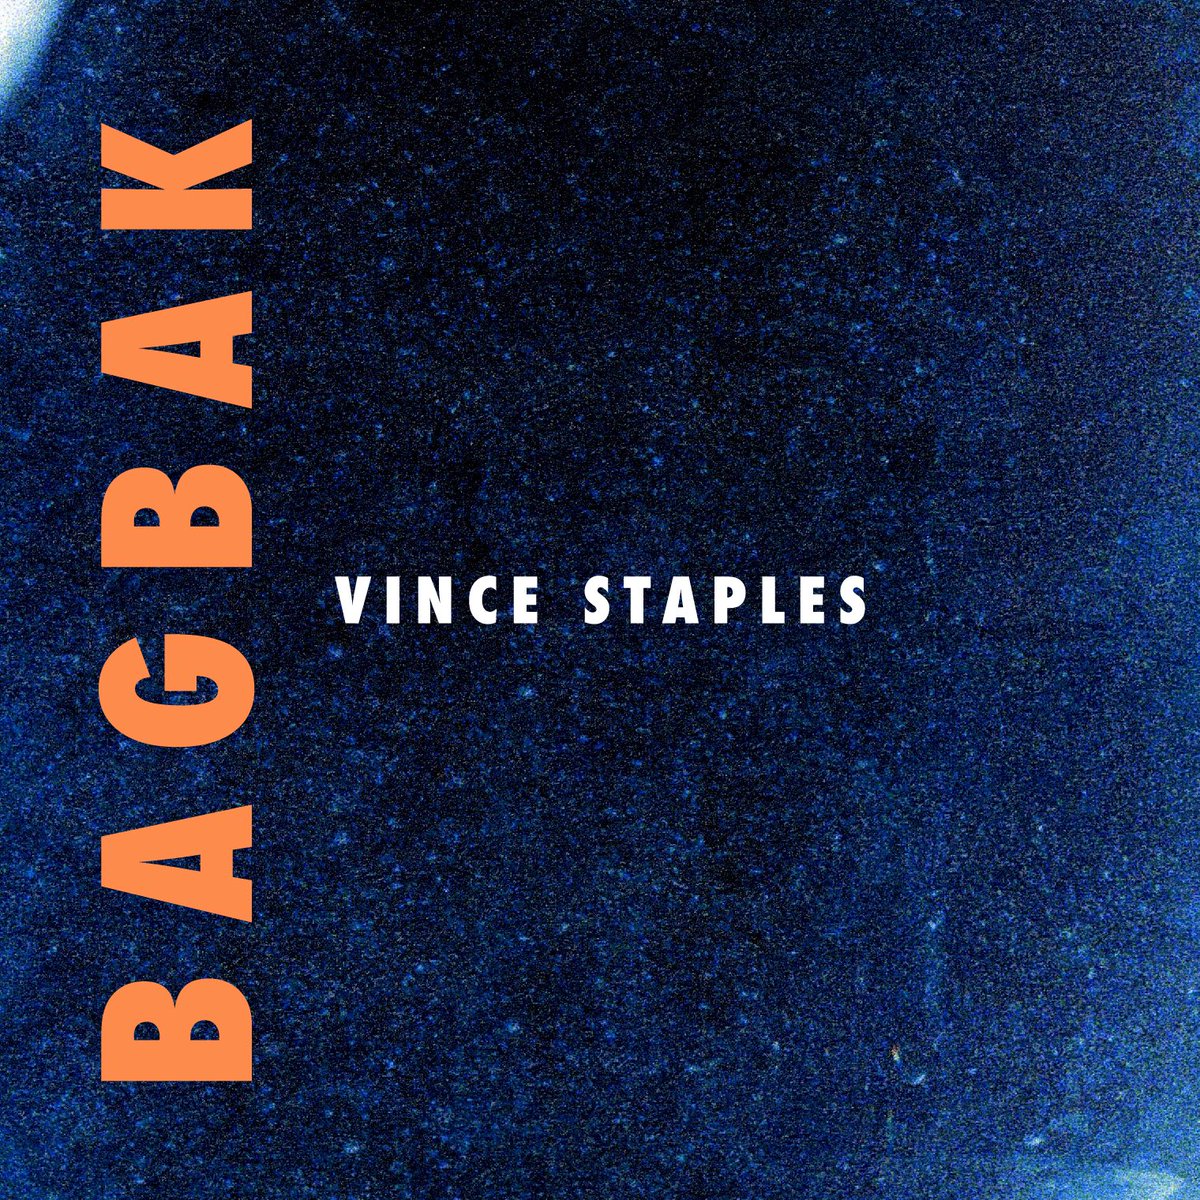 Vince Staples dévoile son quatrième album Bagbak